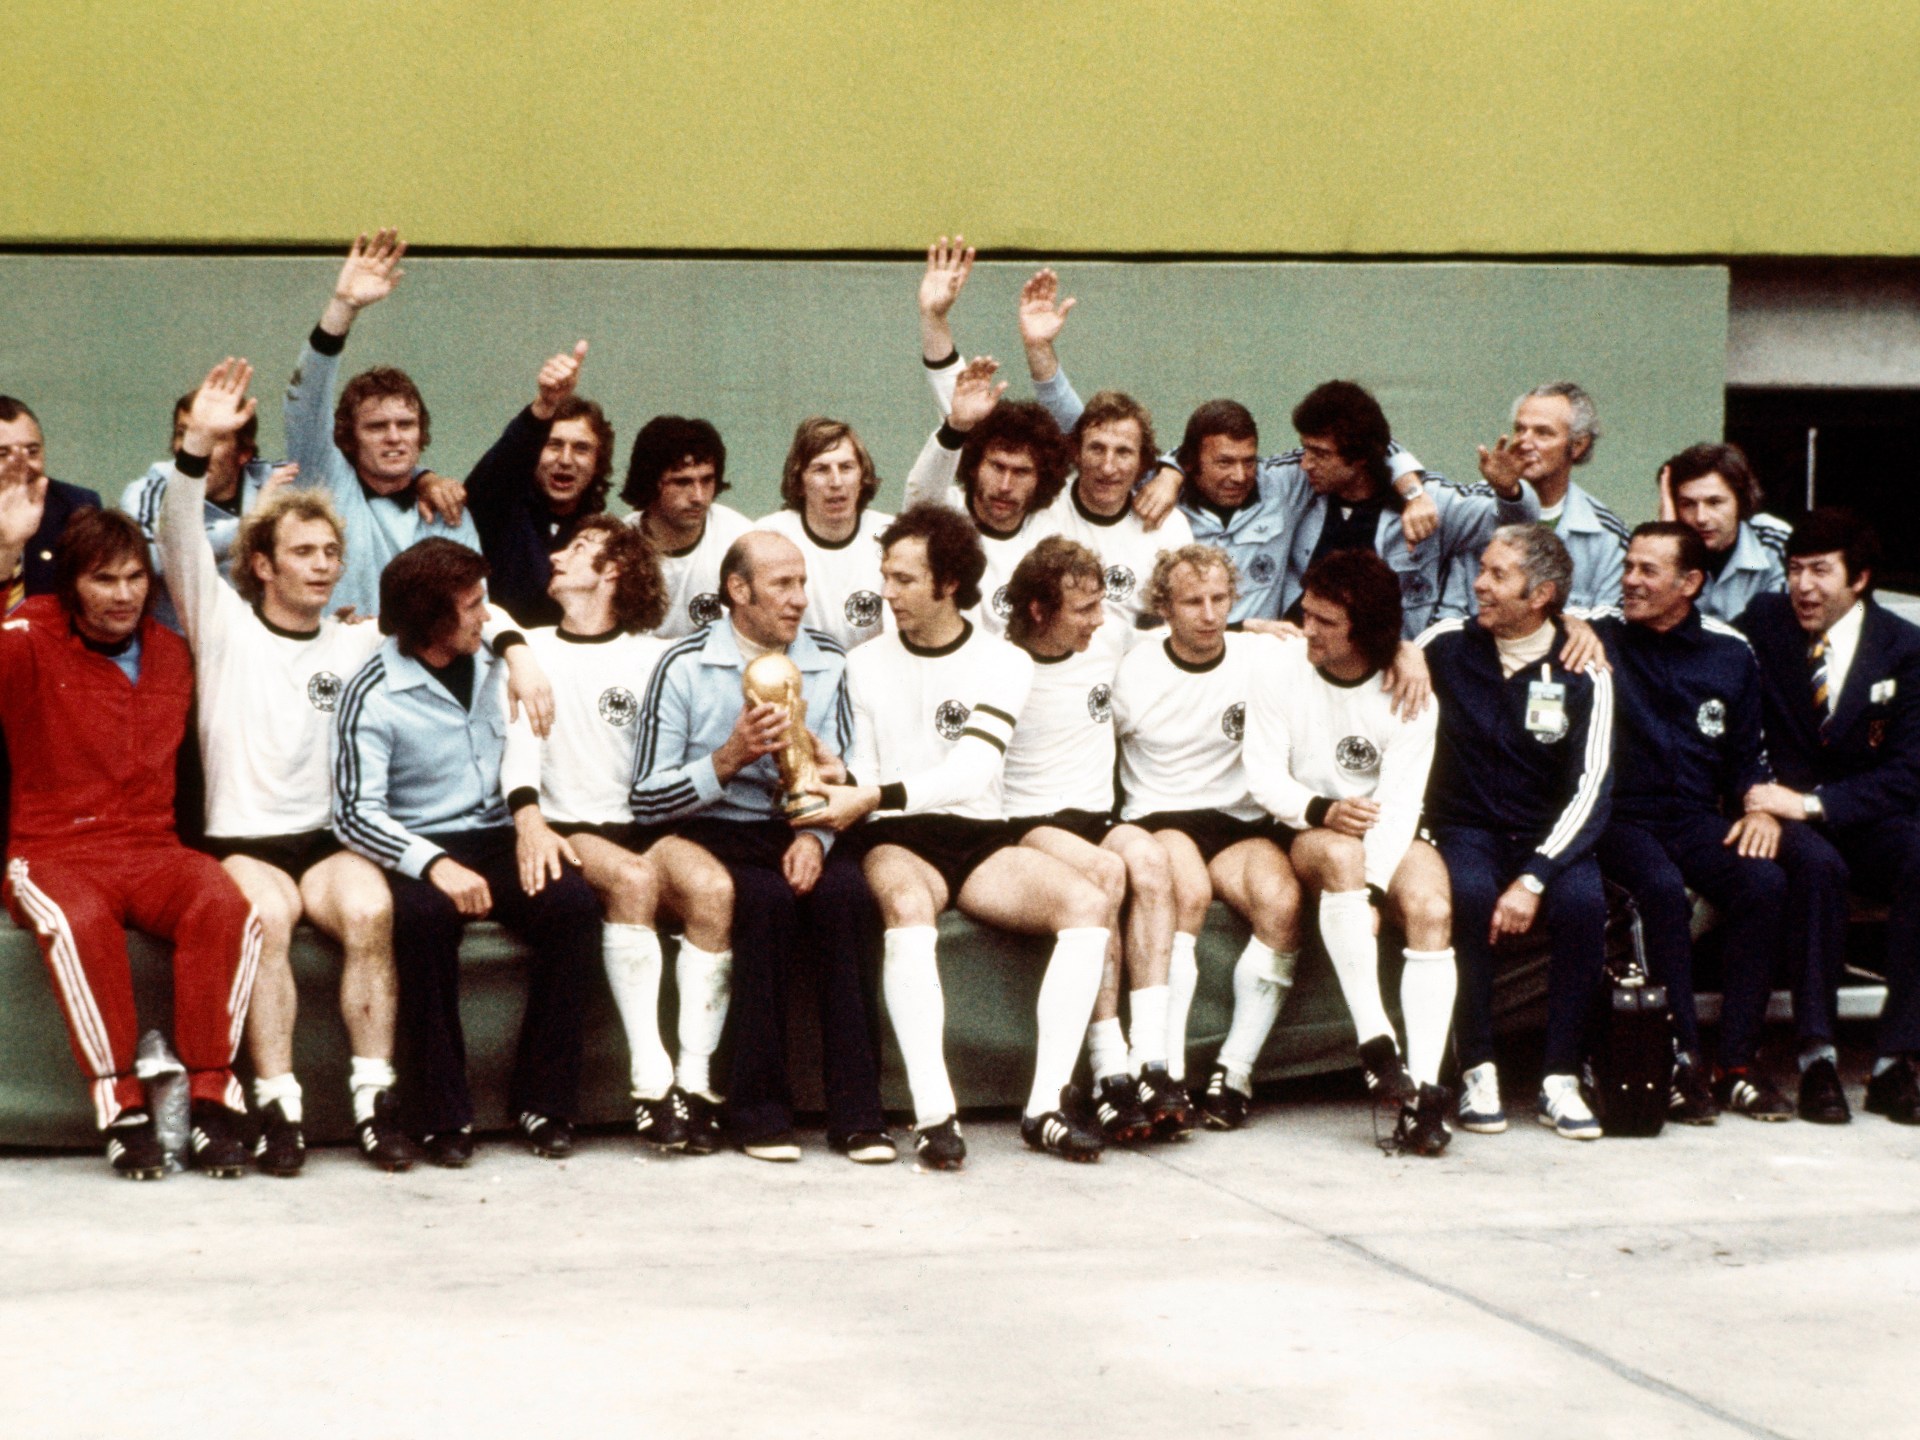 Mundial 1974: Quando os holandeses substituem o Brasil e conquistam a torcida |  notícias de futebol